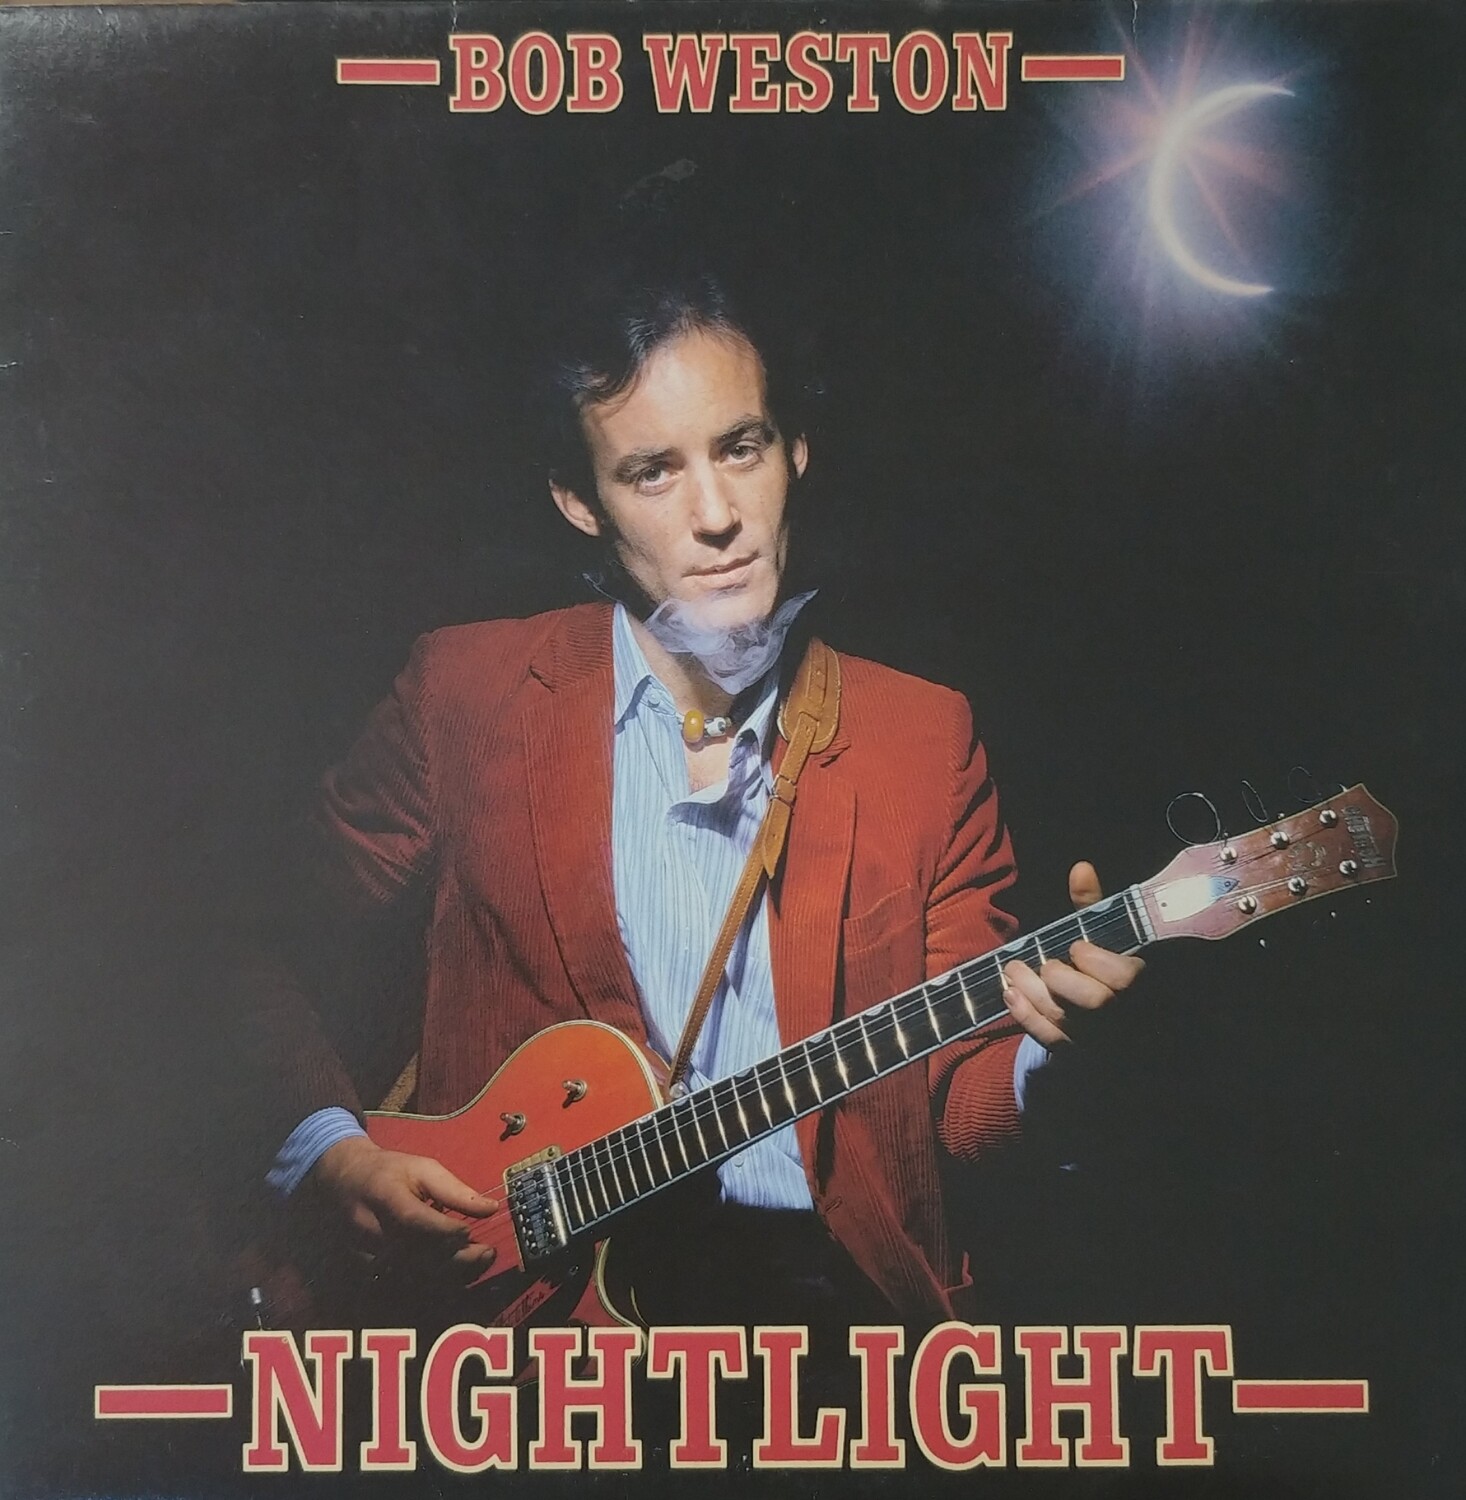 Bob Weston - Nightlight